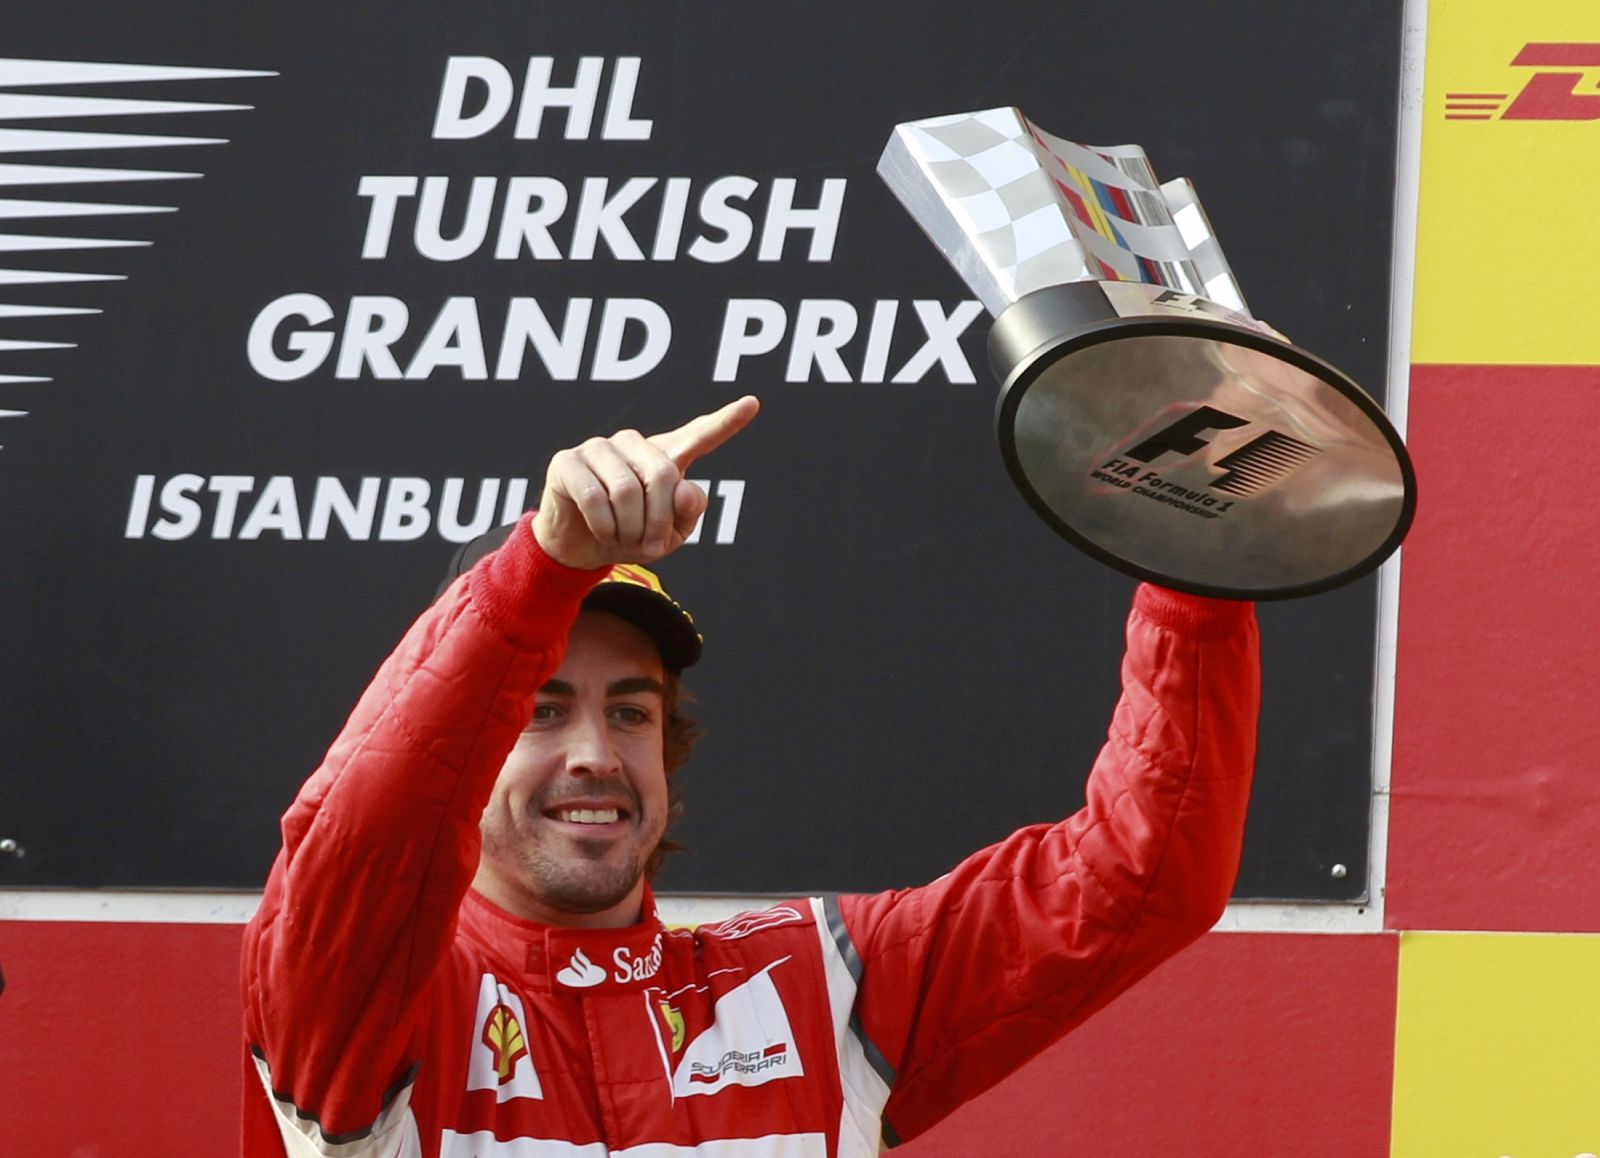 El piloto asturiano de Ferrari, Fernando Alonso, en una imagen de archivo durante el Gran Premio de Turquía.